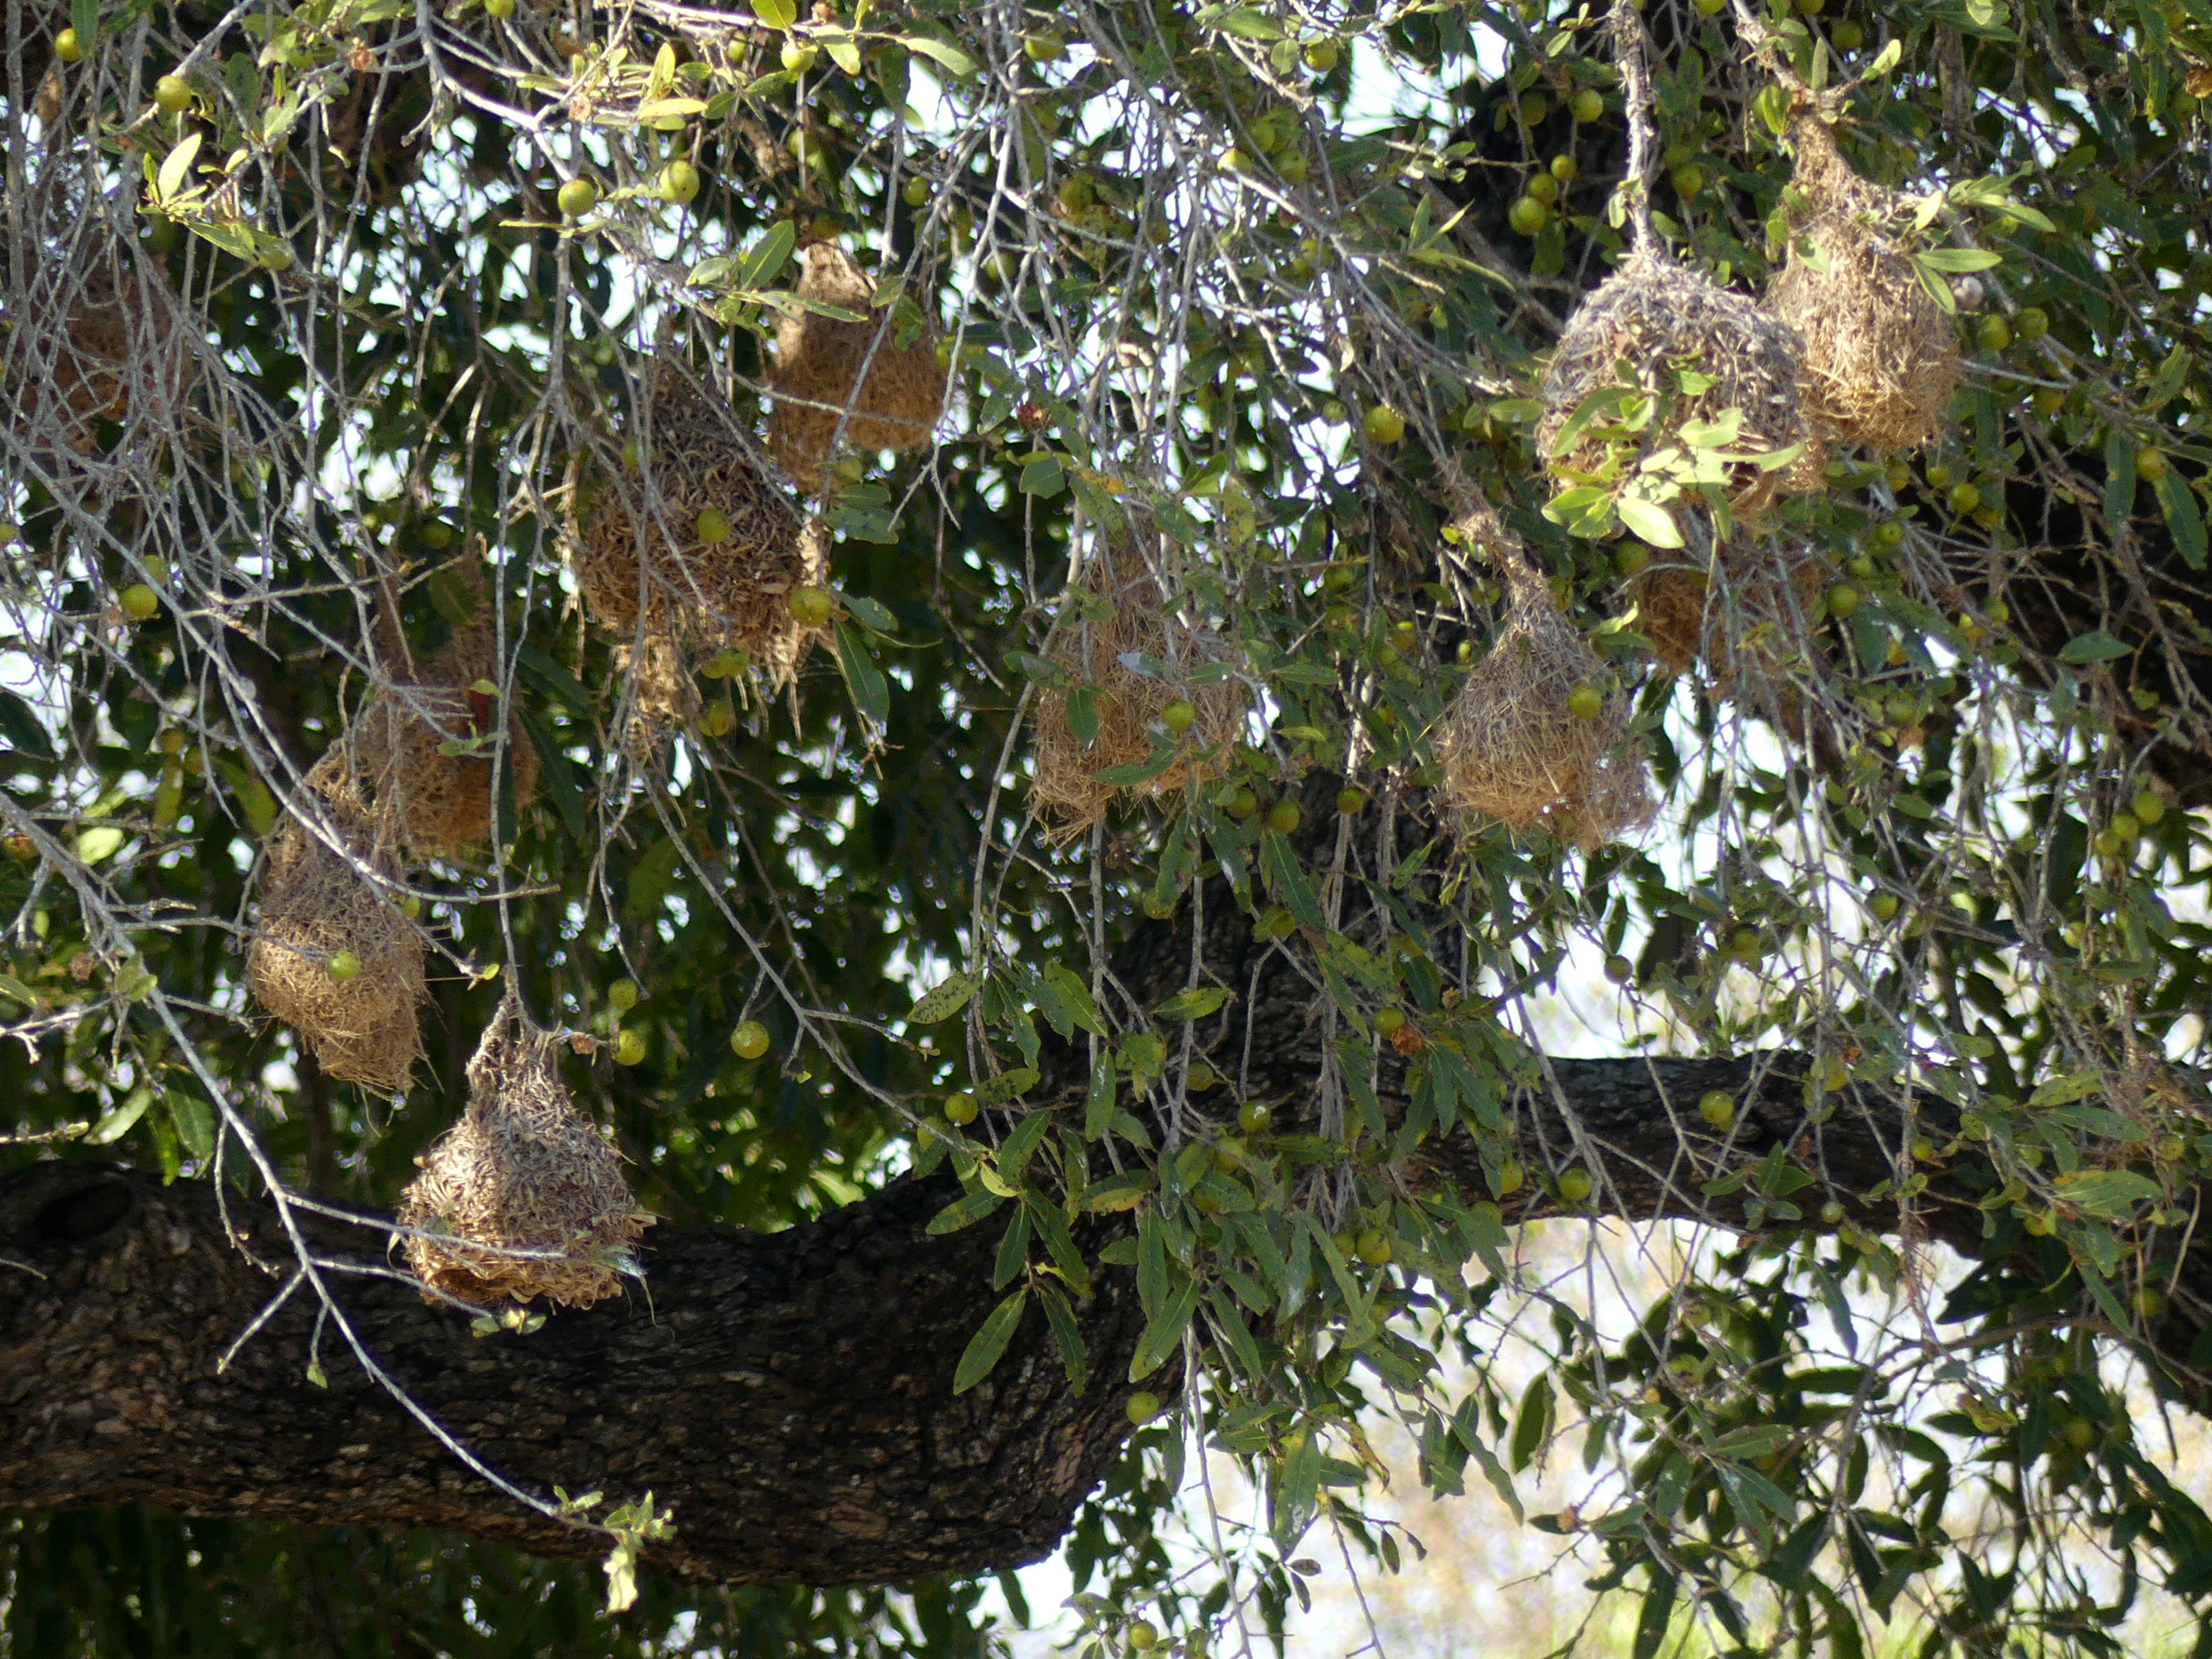 weaver nests